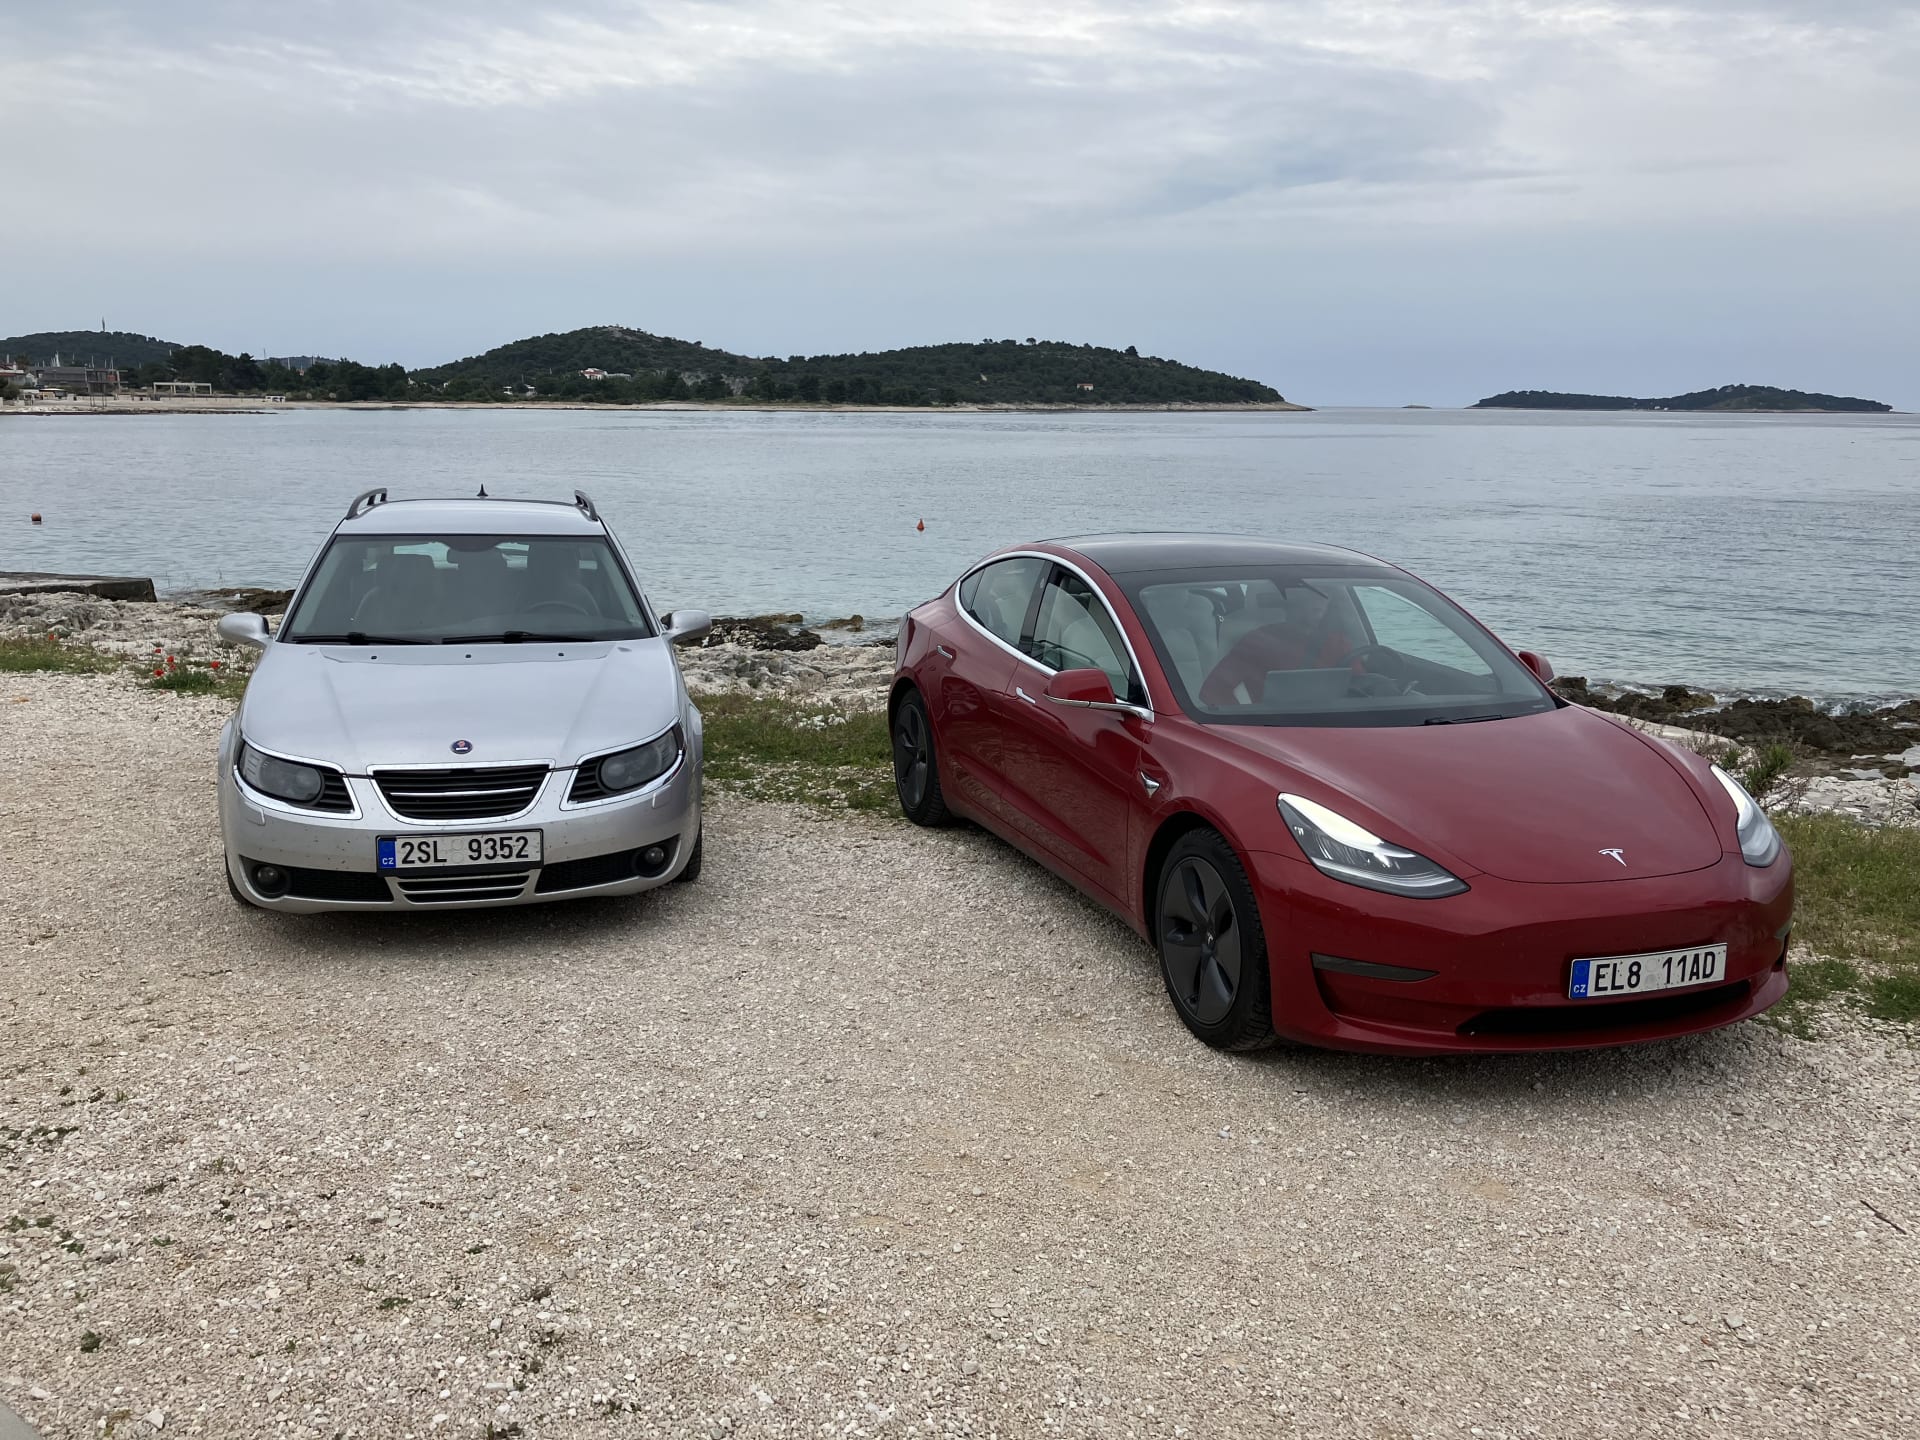 Mise splněna. Náš Saab byl v cíli po odečtení zastávky kvůli natáčení televizního vstupu zhruba o hodinu a půl dřív než Tesla.